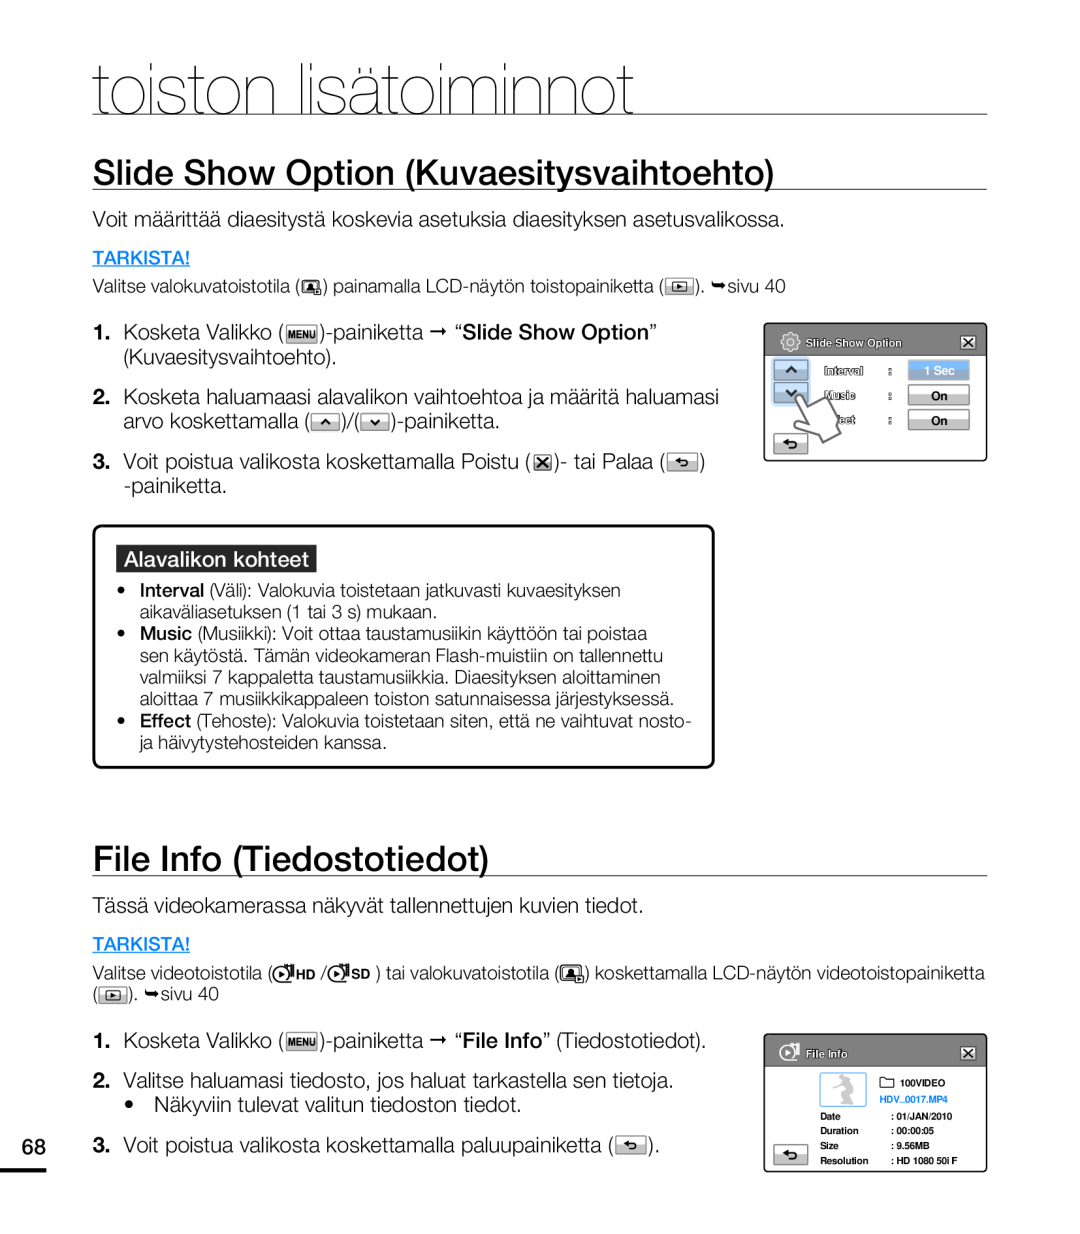 Samsung HMX-T10WP/EDC manual Slide Show Option Kuvaesitysvaihtoehto, File Info Tiedostotiedot, toiston lisätoiminnot 